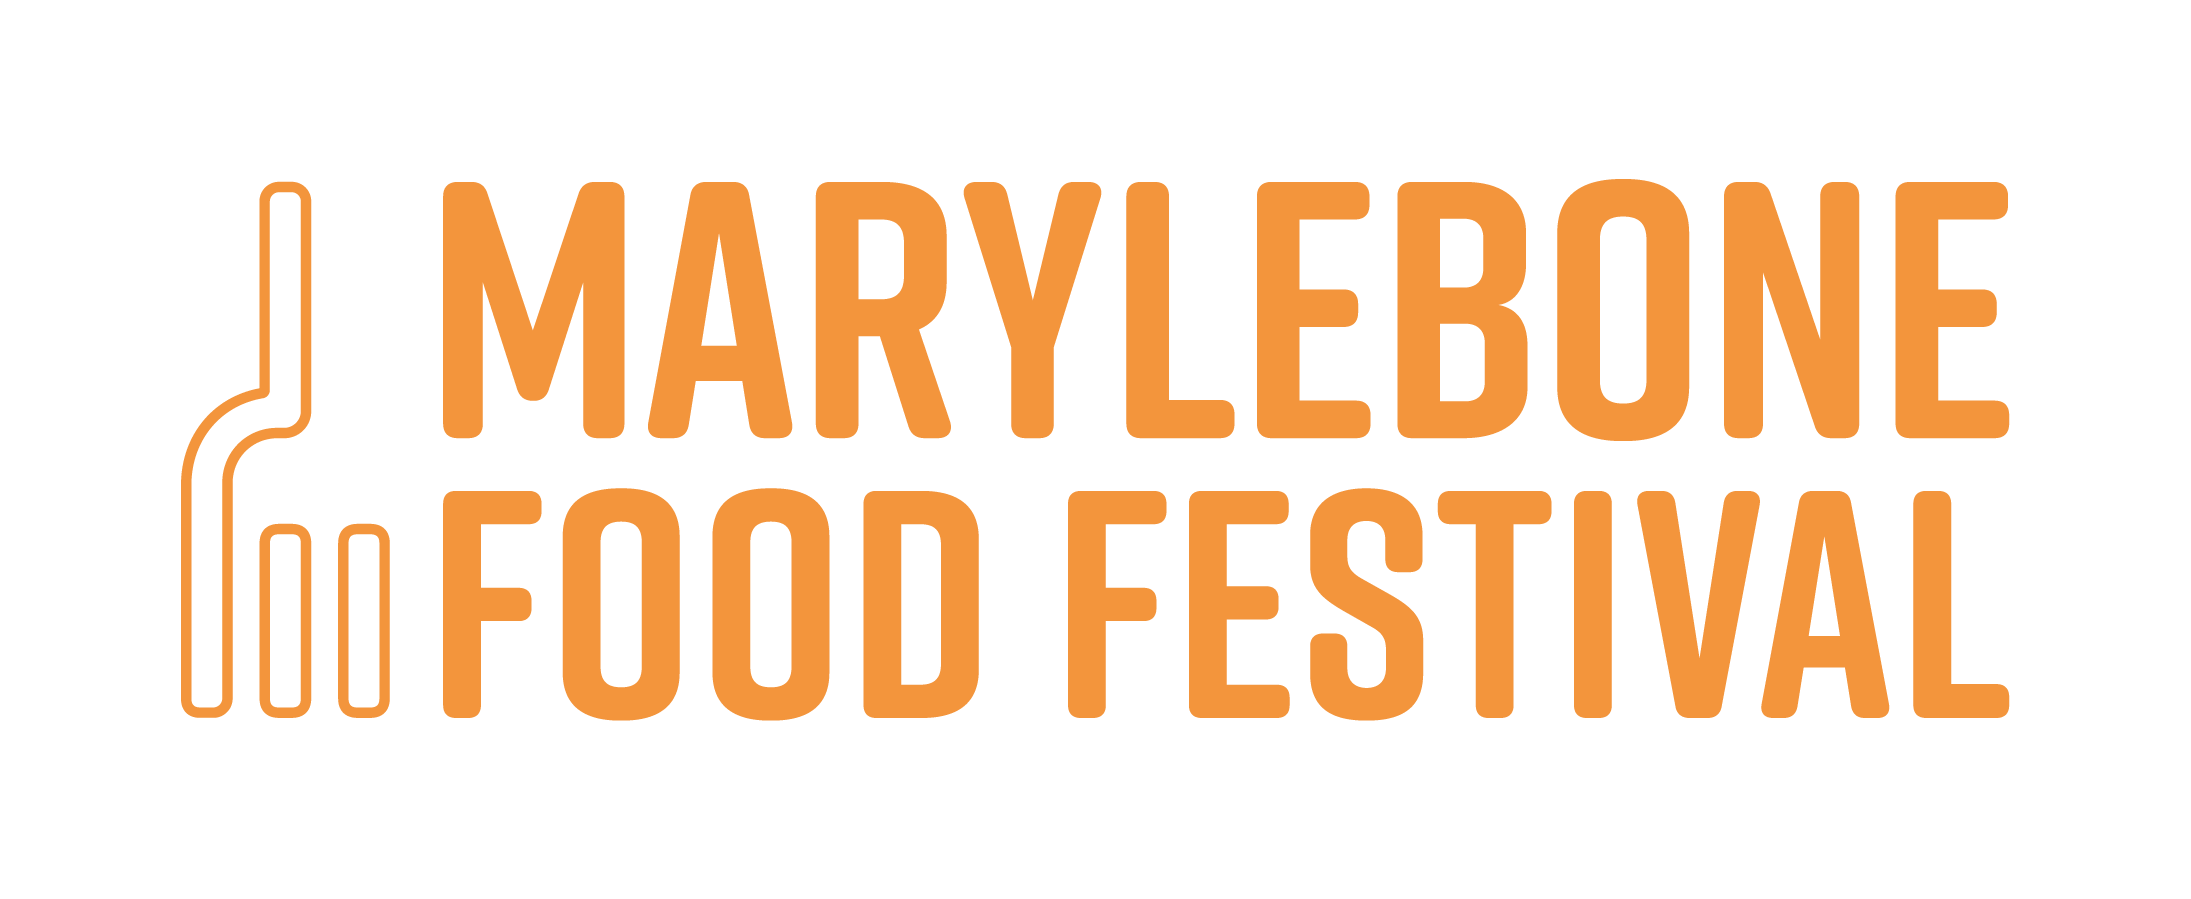 Marylebone Food Festival